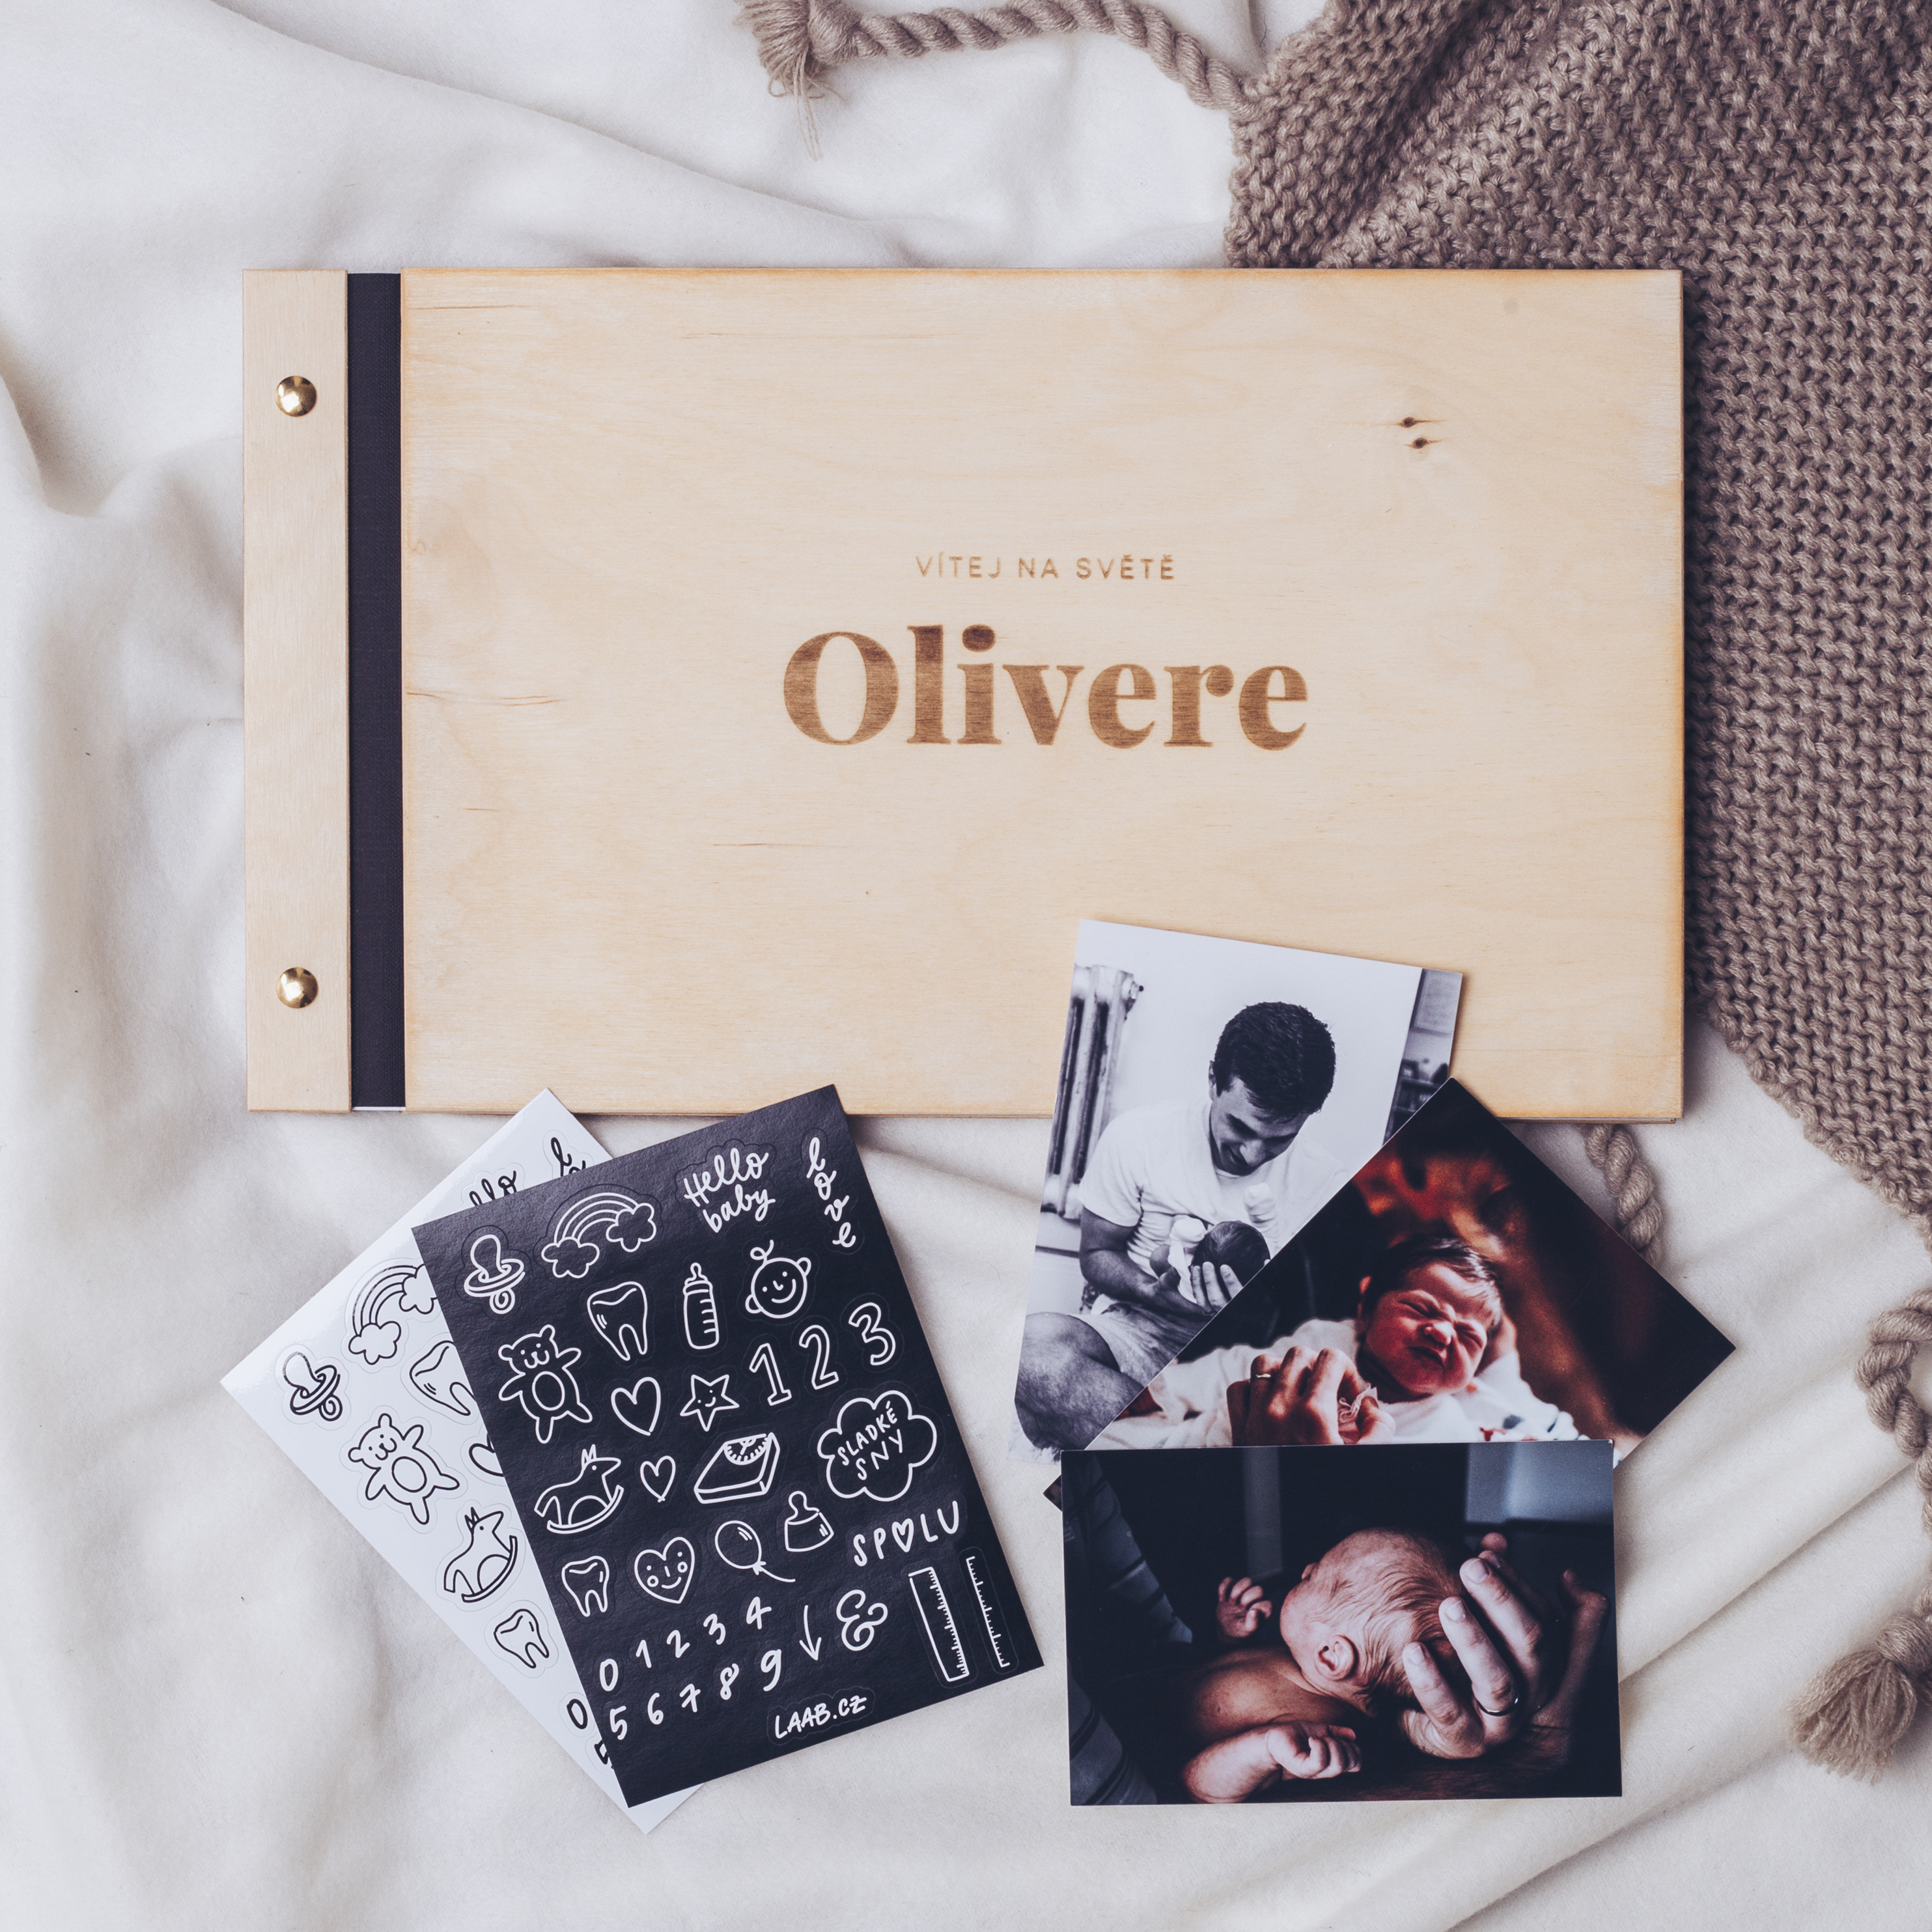 dřevěné fotoalbum Oliver: FORMÁT FOTOALBA na šířku, POČET LISTŮ 30 s prokladovými listy, FORMÁT FOTOALBA na výšku, POČET LISTŮ 25, BARVA LISTŮ bílá